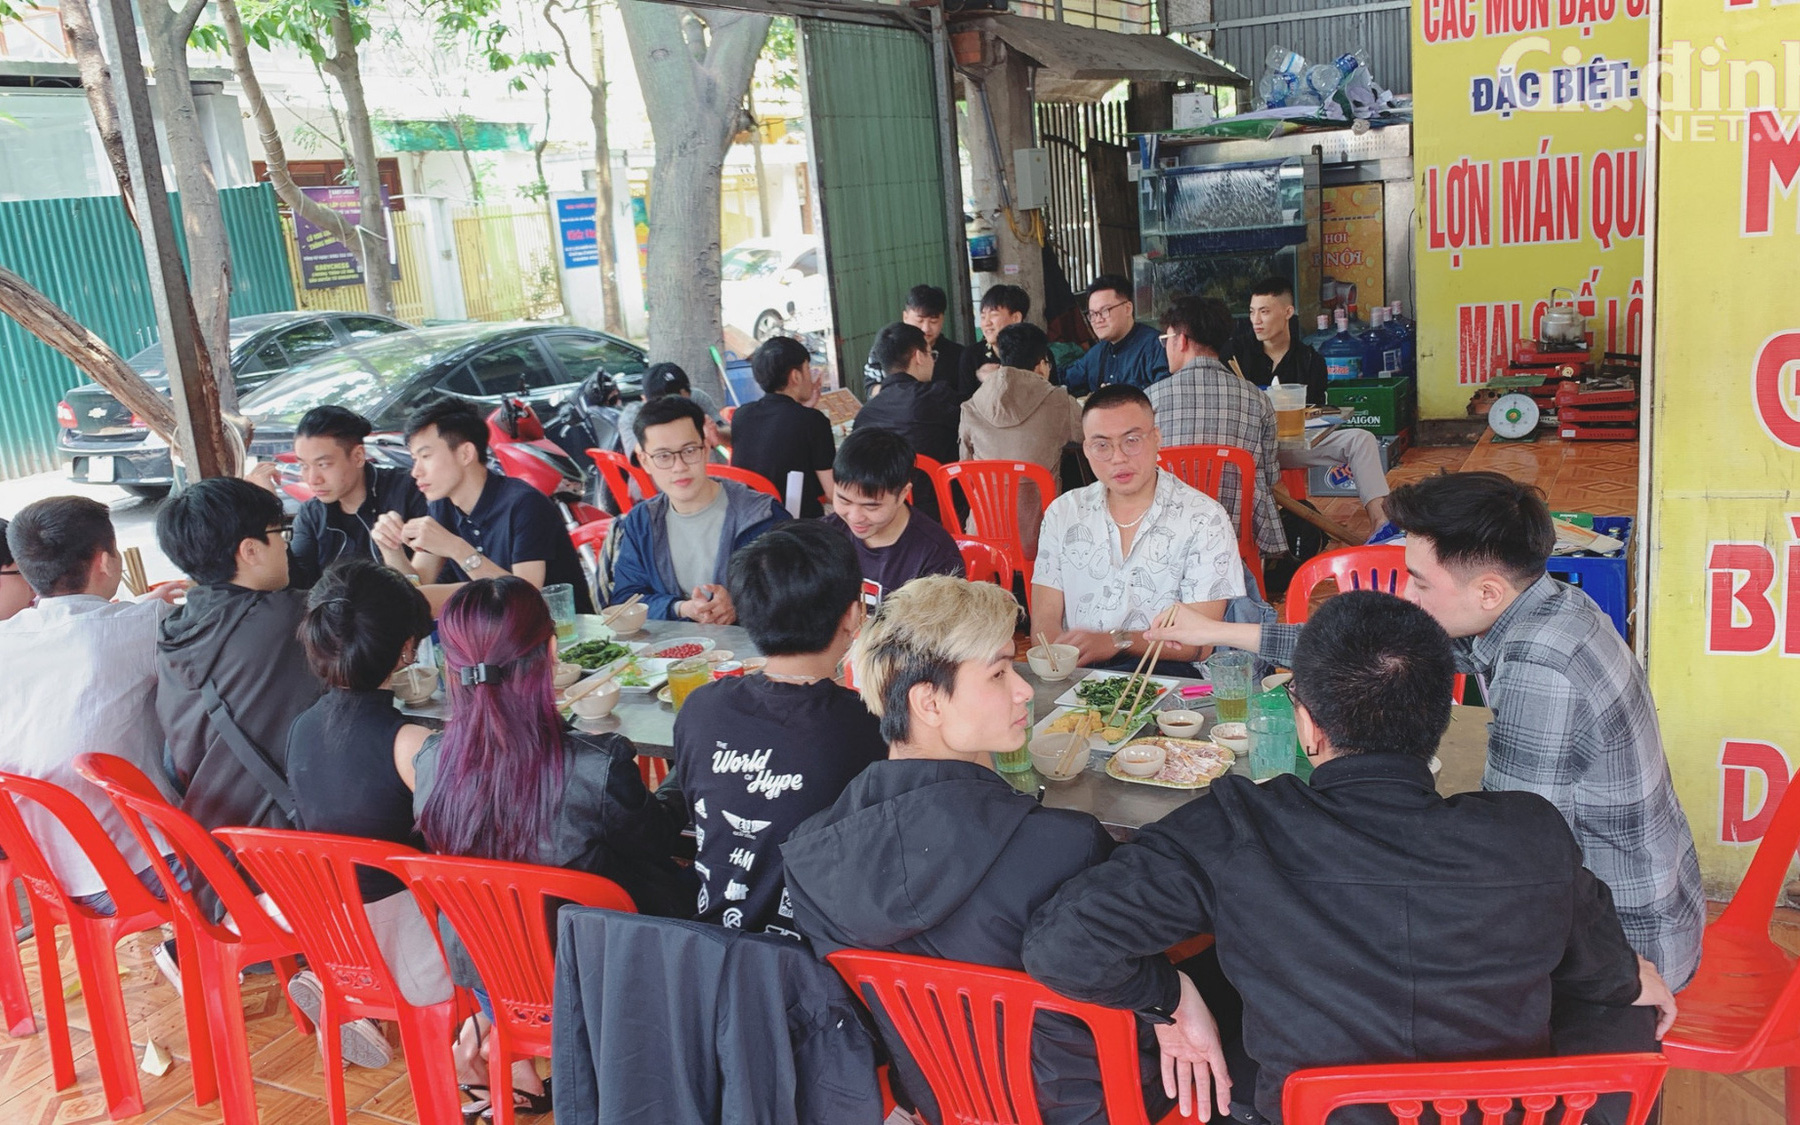 Đón gần 200 khách mỗi ngày sau dịch COVID-19, nhiều chủ quán ăn "vui như Tết" vì "được" bận rộn